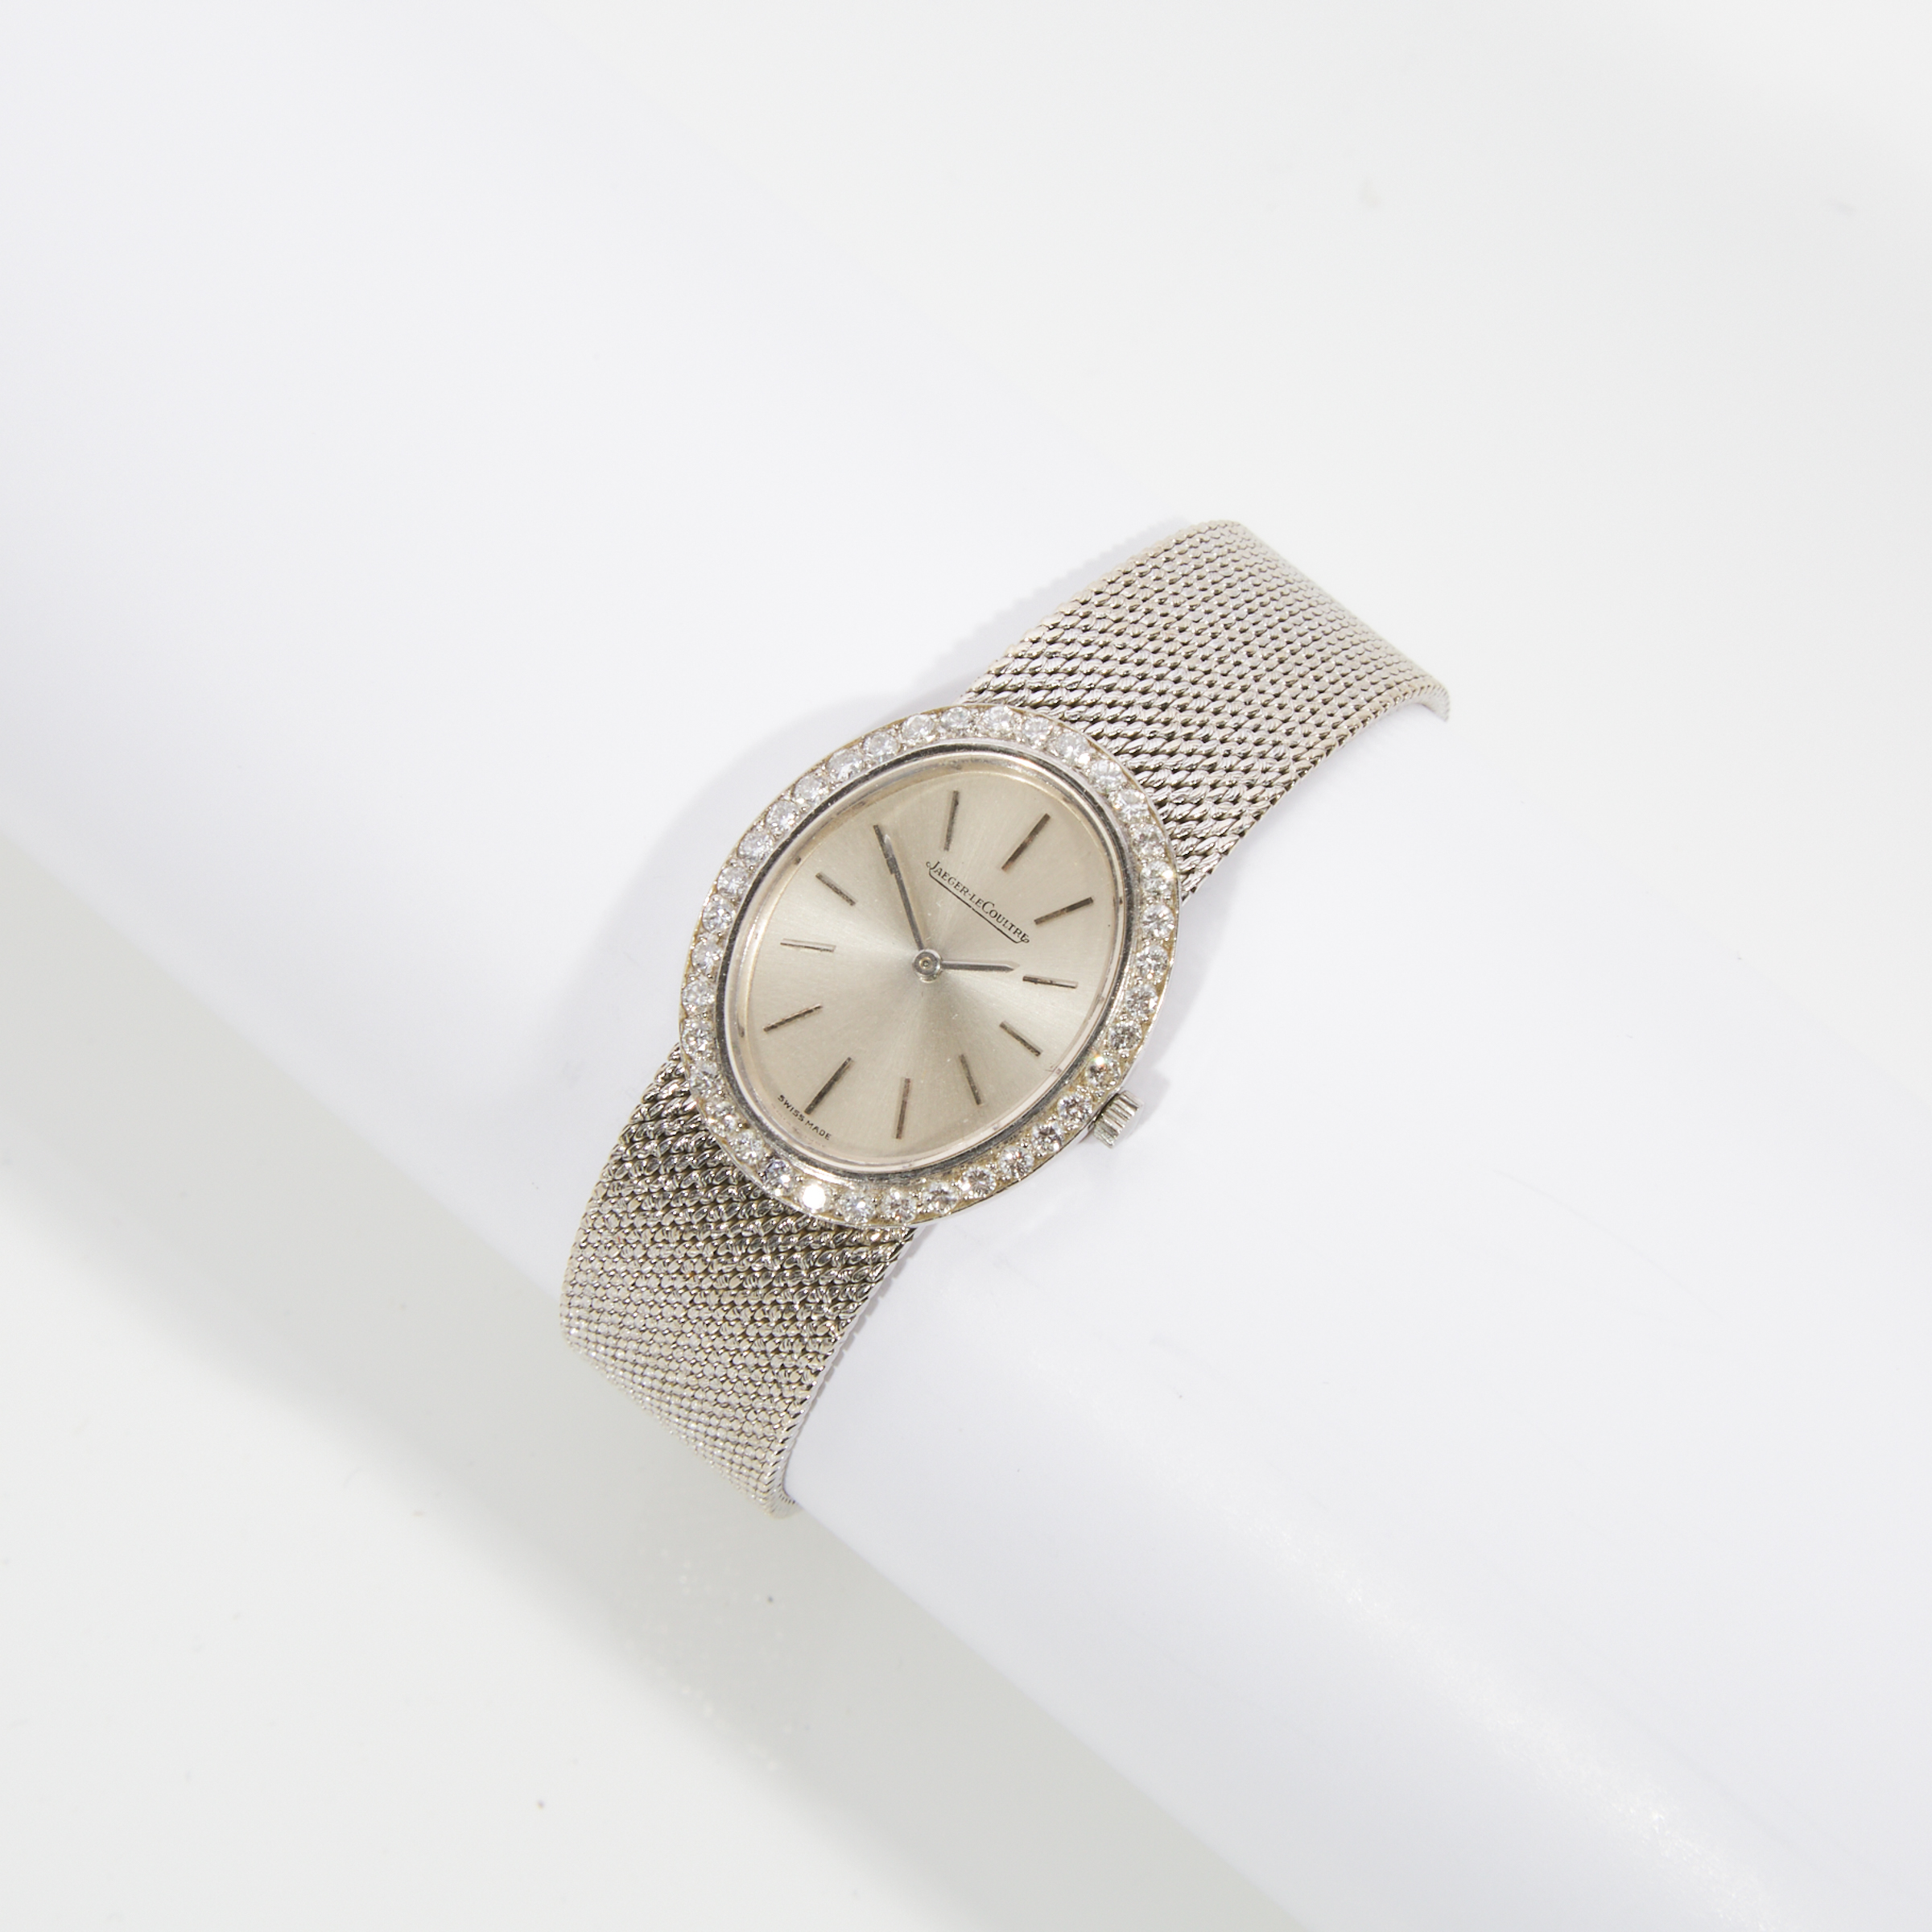 Lady's Jaeger-LeCoultre Wristwatch